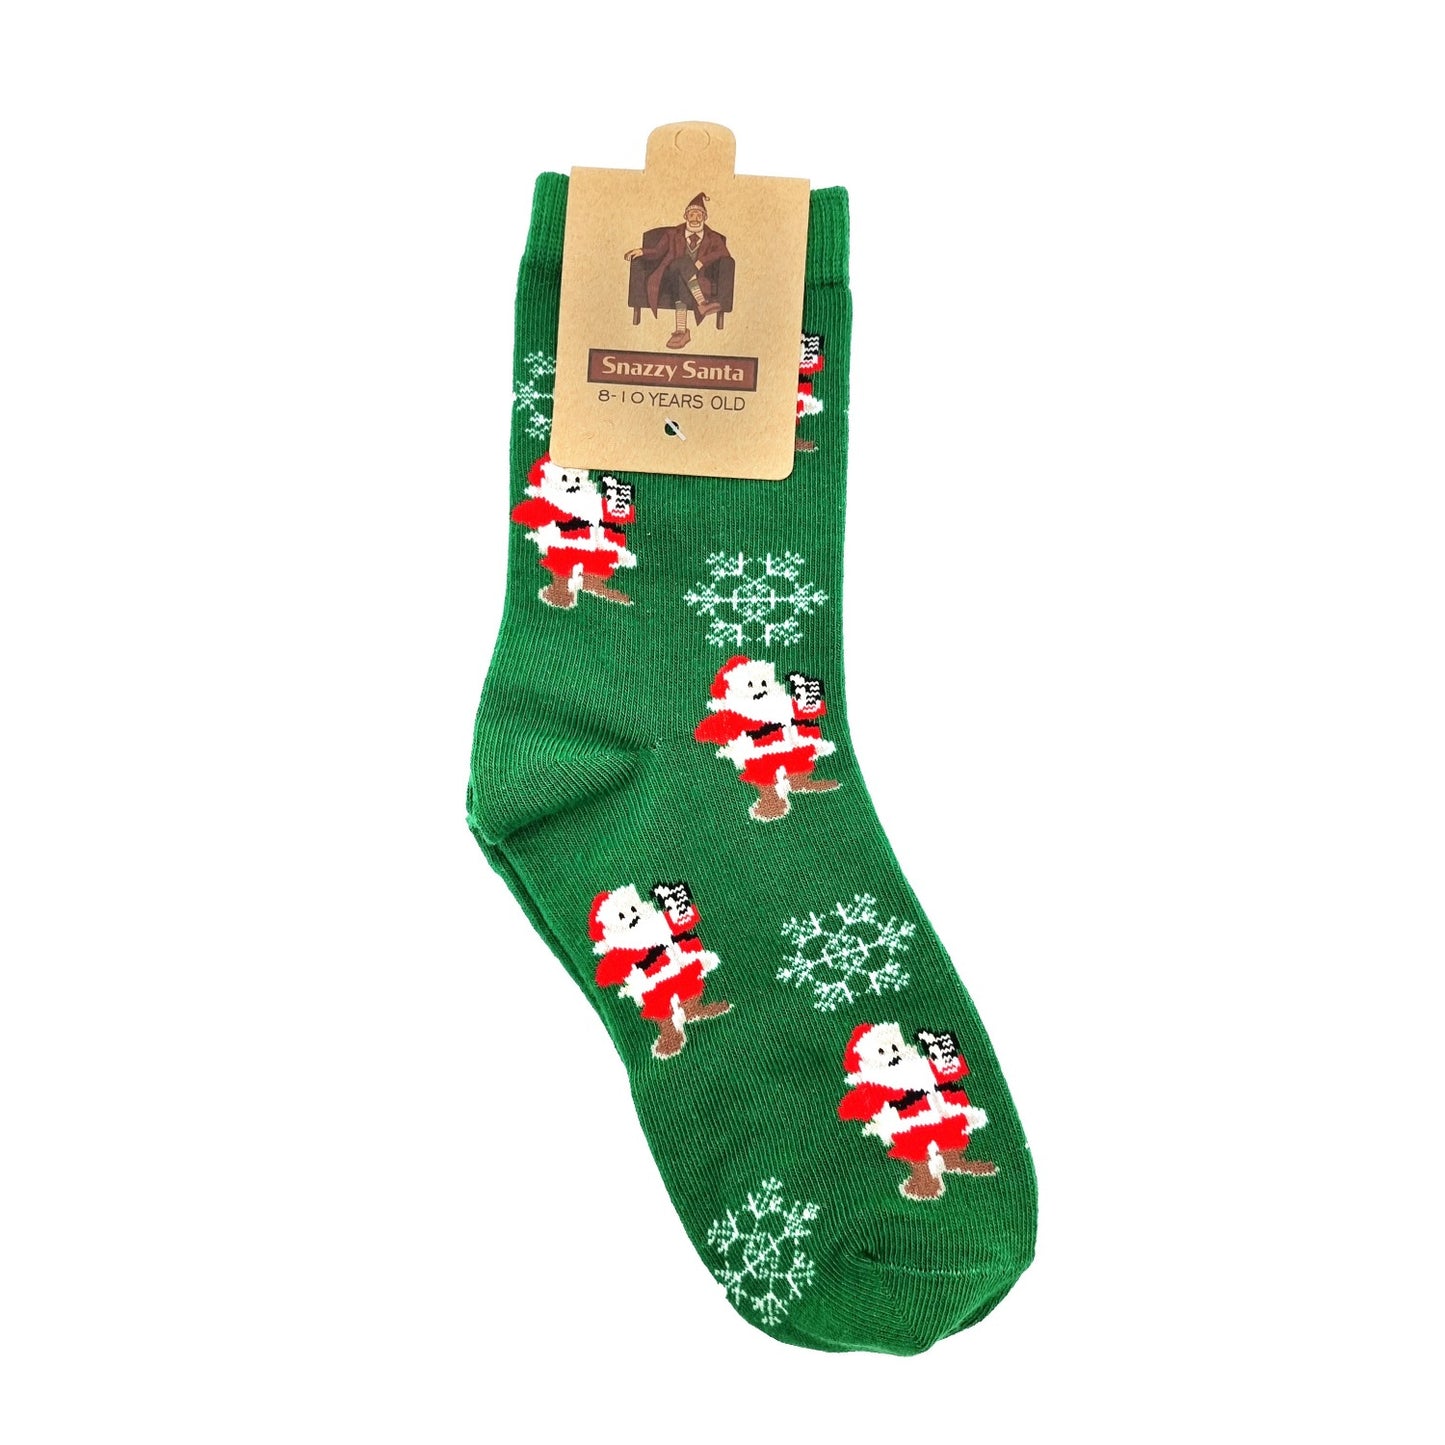 Christmas socks "Papa Noël" for children